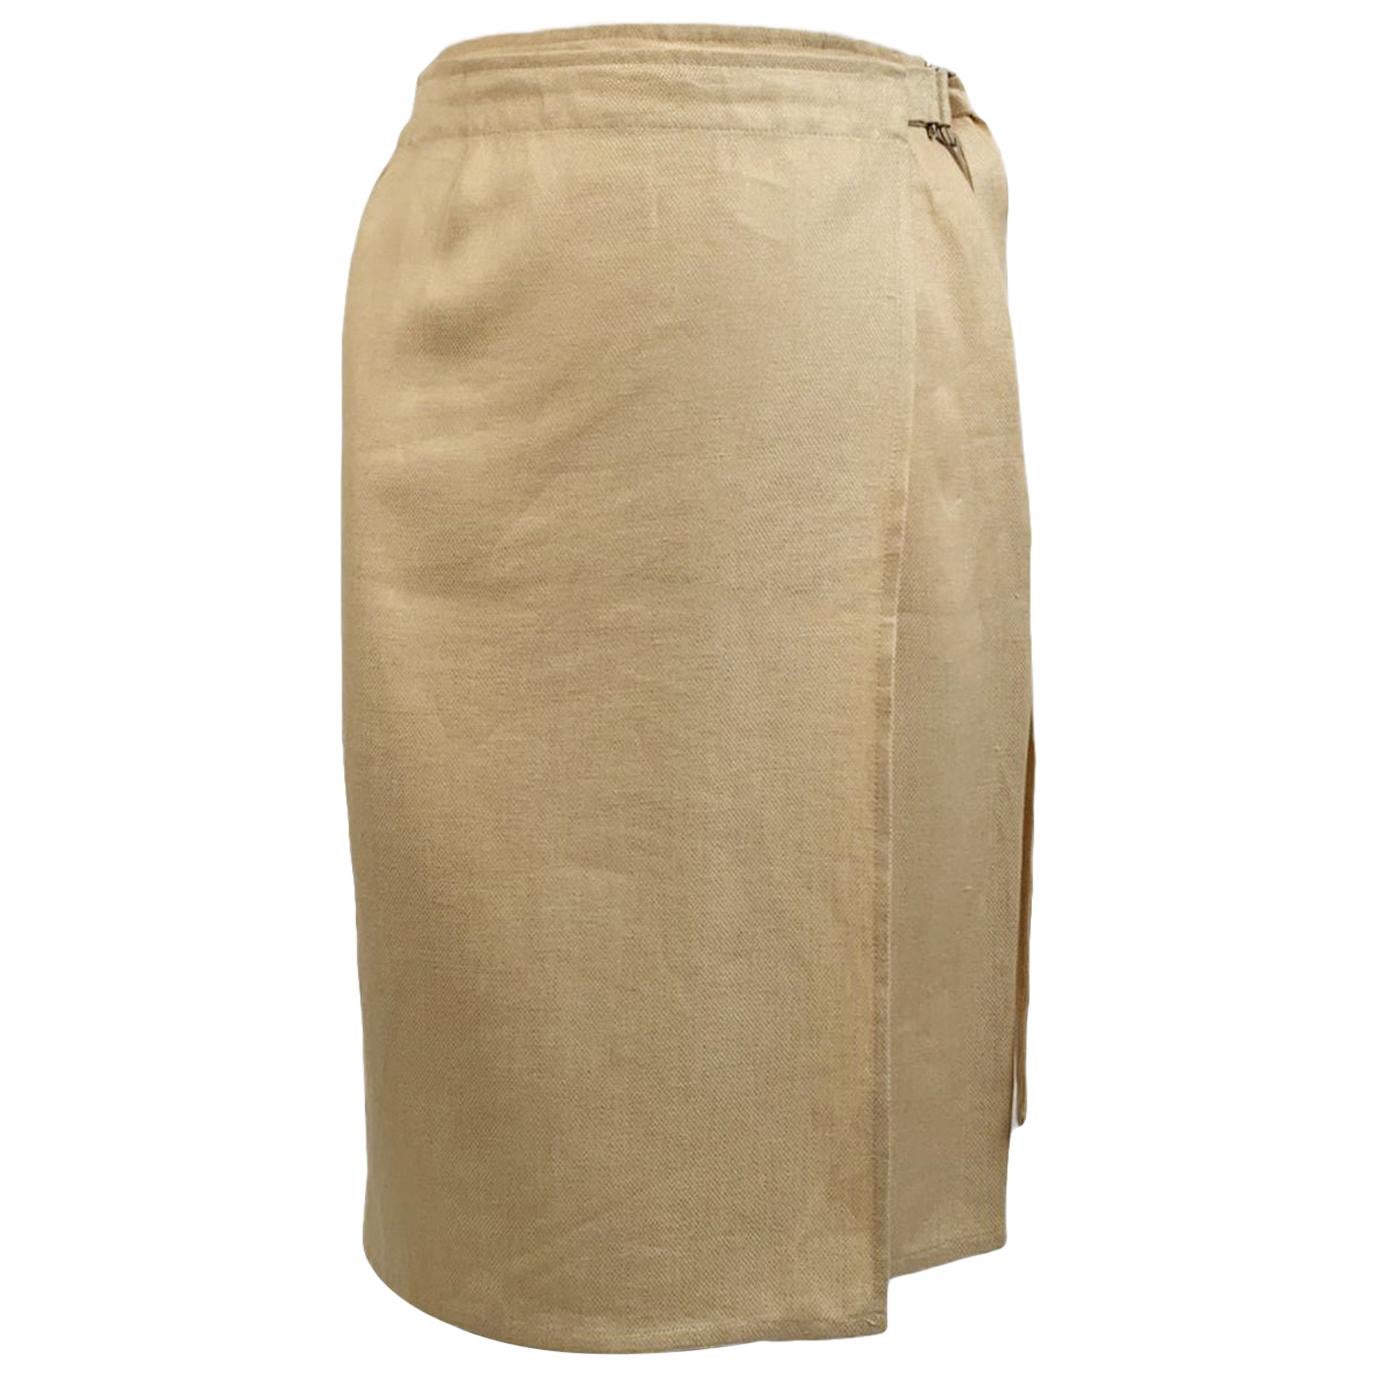 Salvatore Ferragamo Vintage Beige Linen and Silk Wrap Skirt Size 44